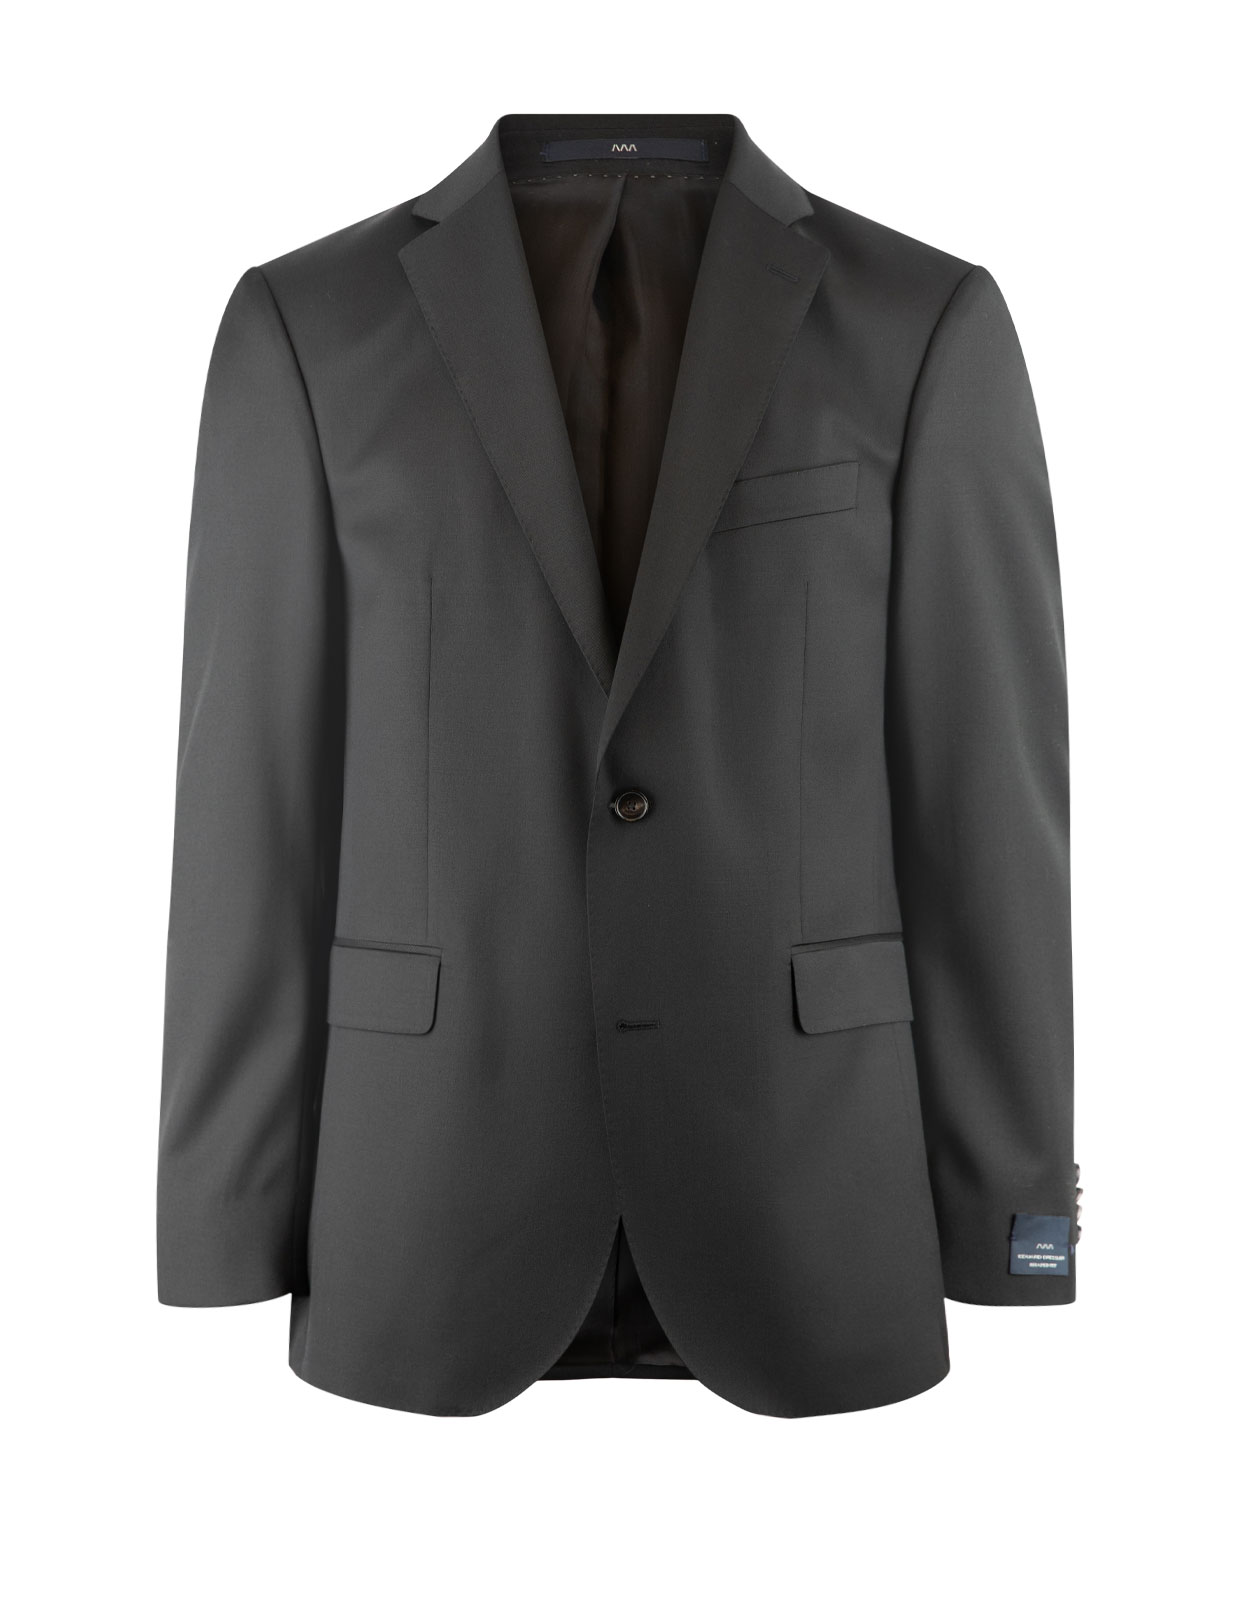 Edson Suit Jacket 110's Wool Mix & Match Black Stl 50